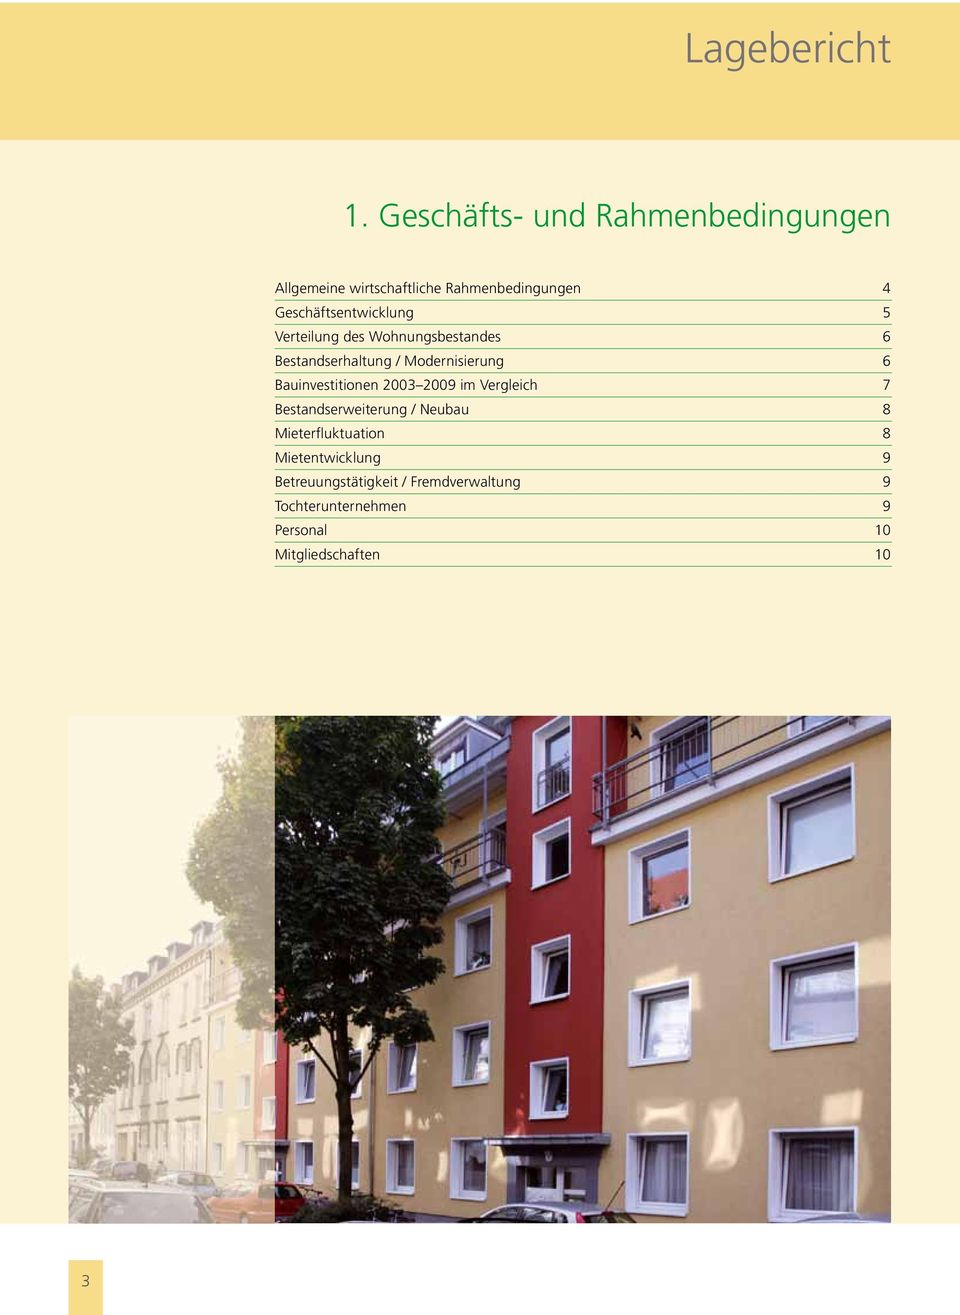 Geschäftsentwicklung 5 Verteilung des Wohnungsbestandes 6 Bestandserhaltung / Modernisierung 6